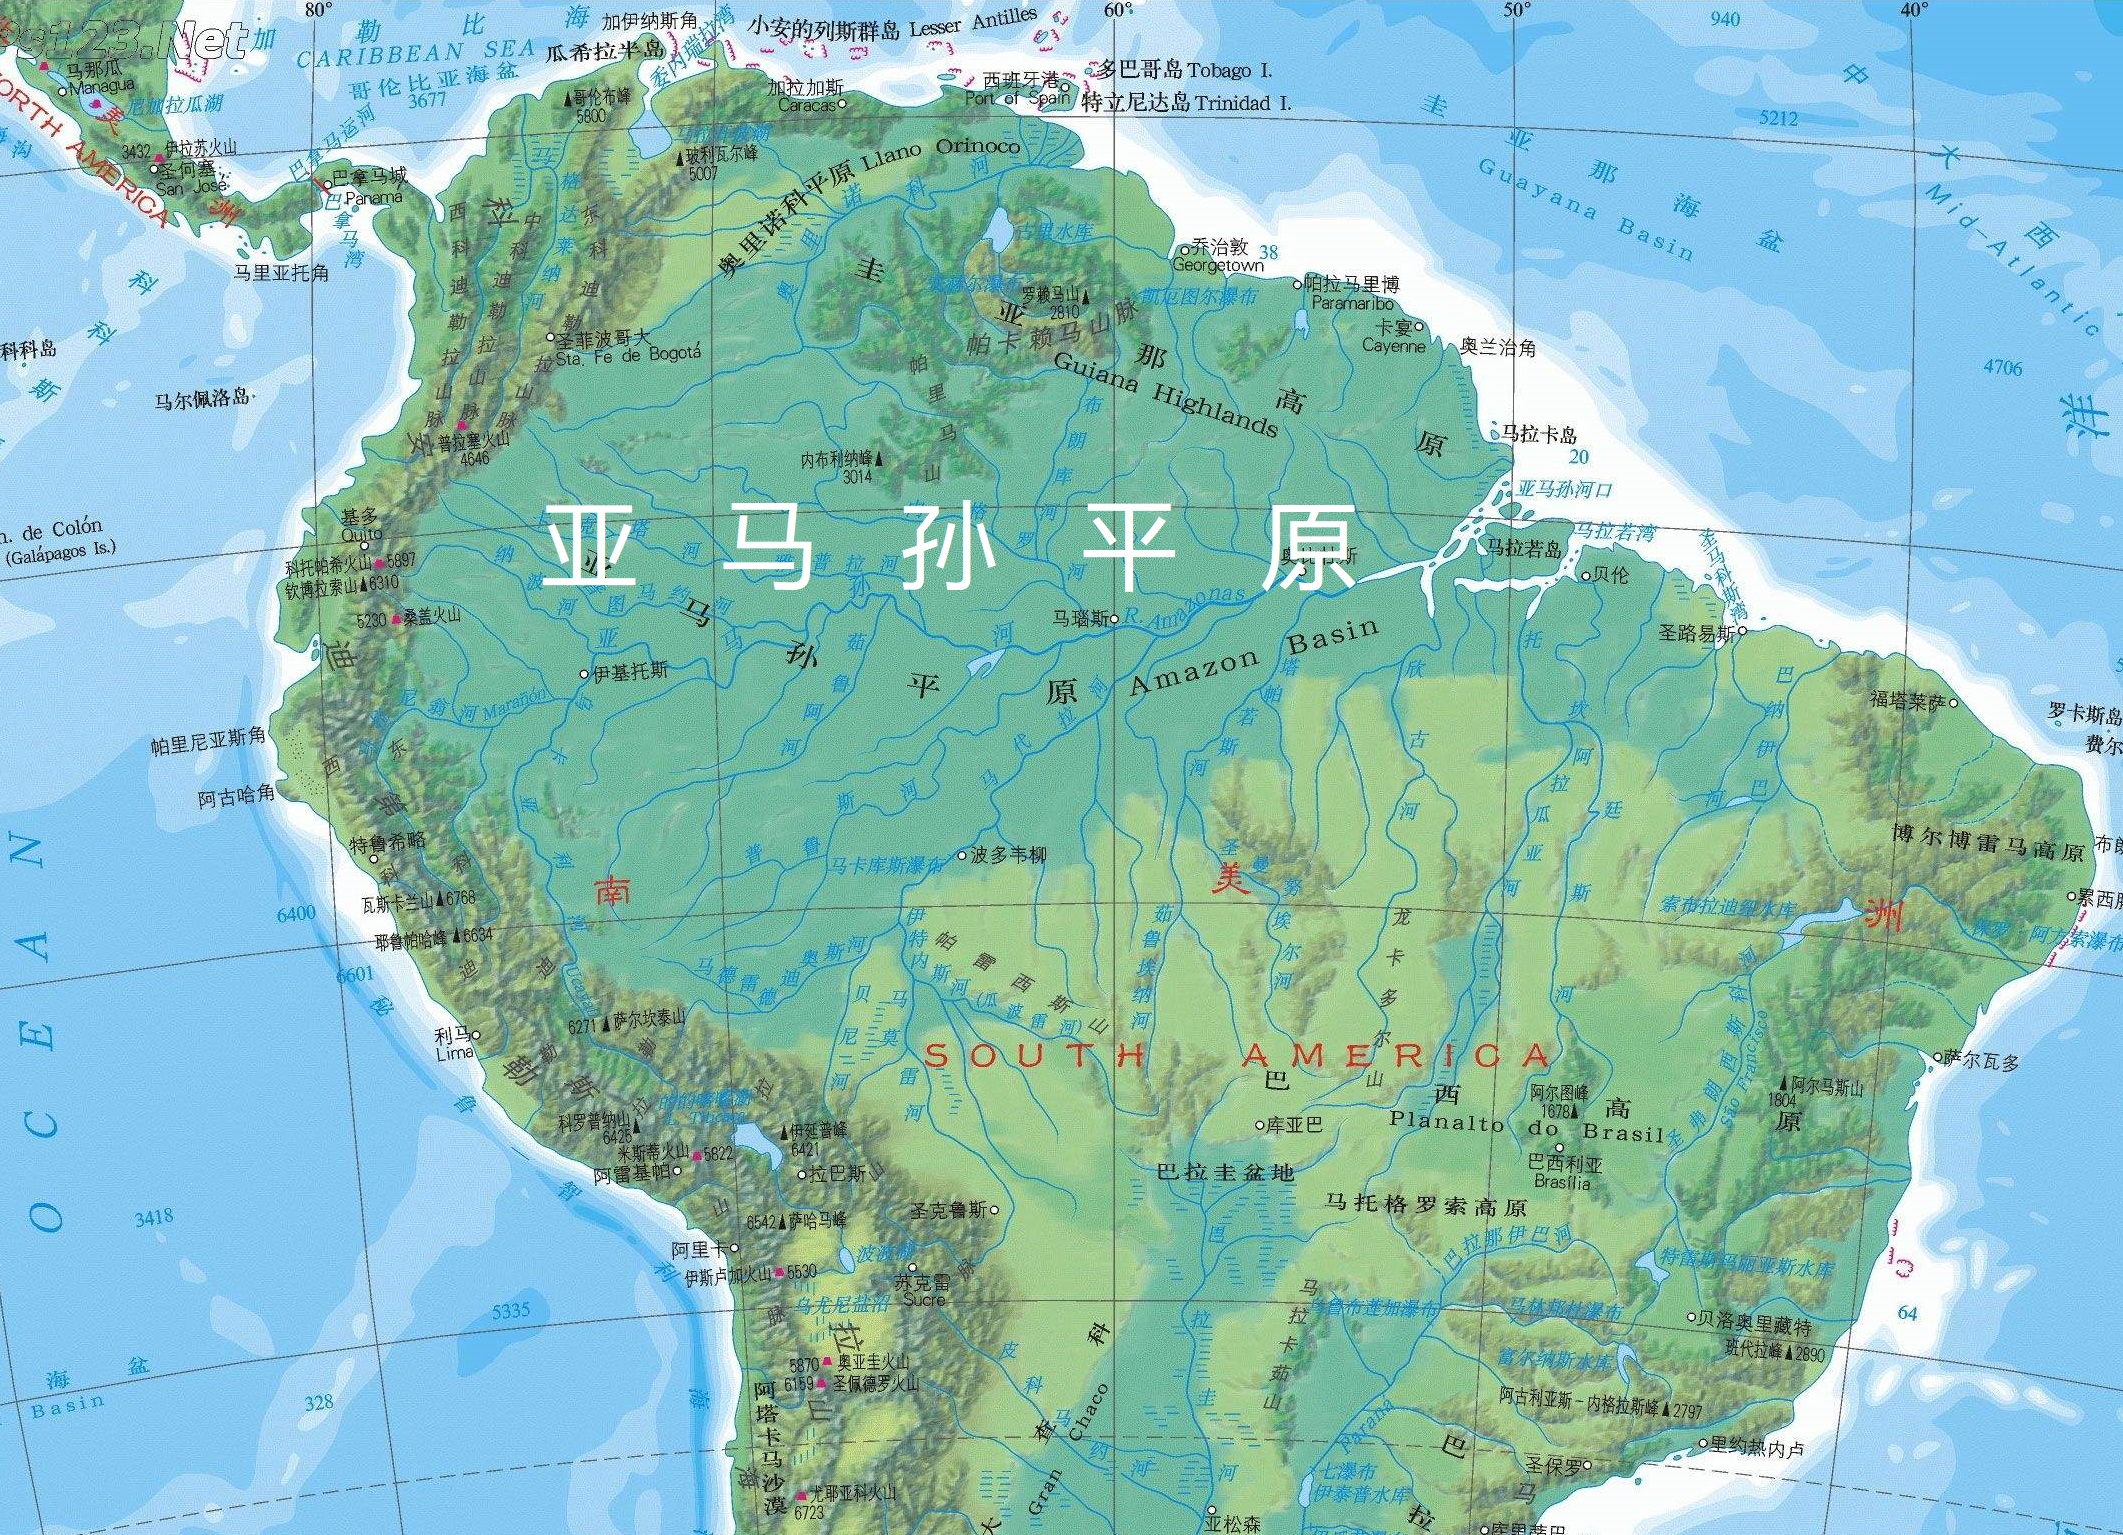 湄公河平原,西欧平原,密西西比河平原等都是世界上人口密集的平原地区